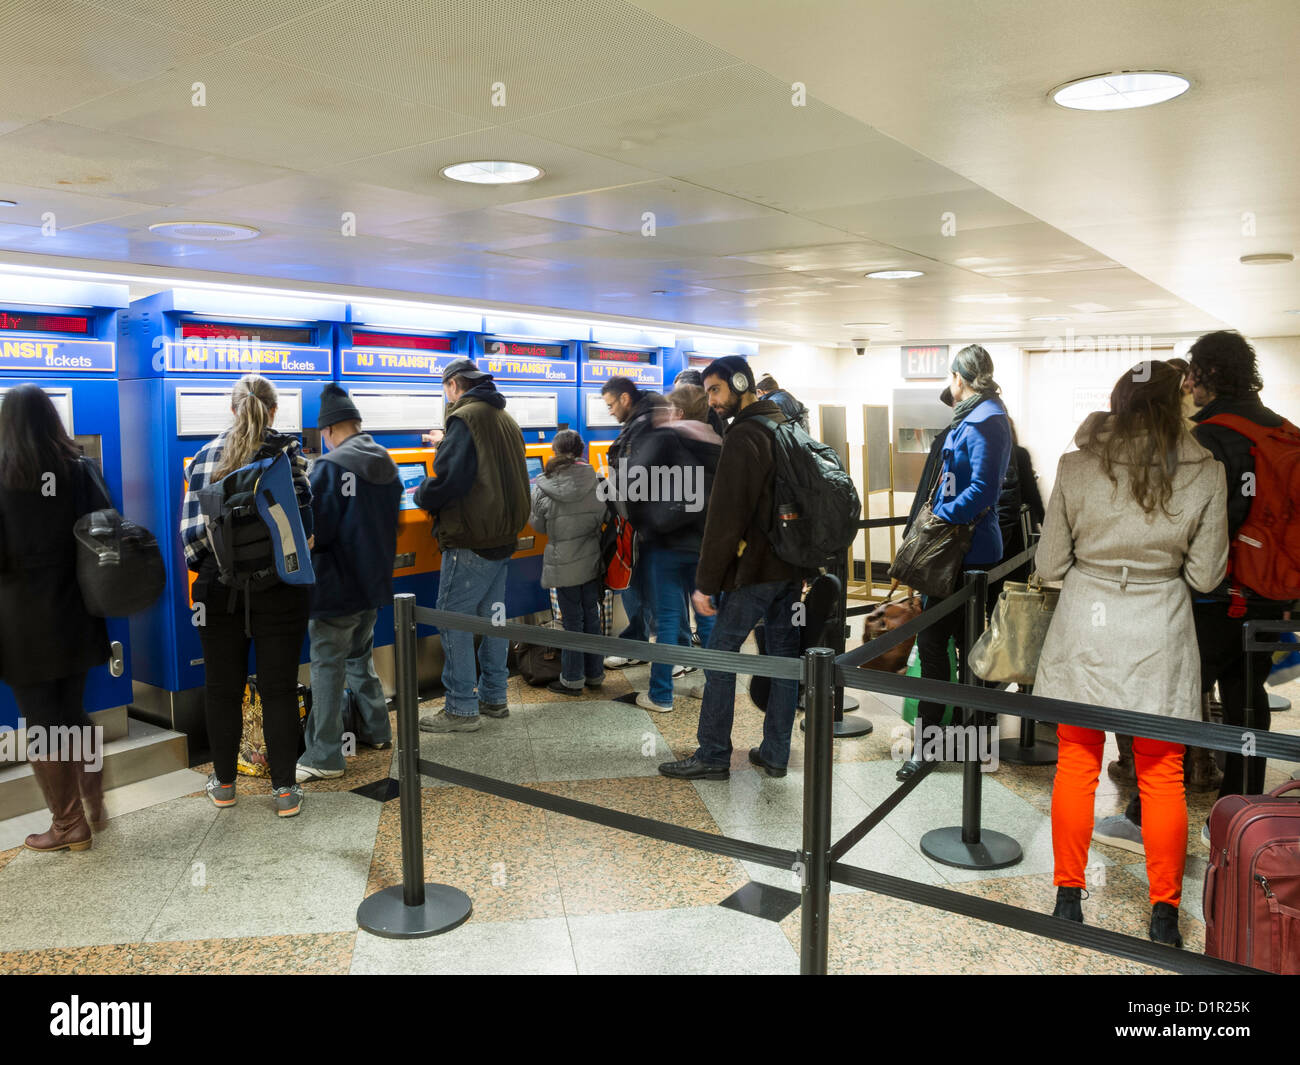 Les voyageurs d'acheter des billets de train New Jersey Transit à libre service distributeur automatique, Penn Station, NYC Banque D'Images